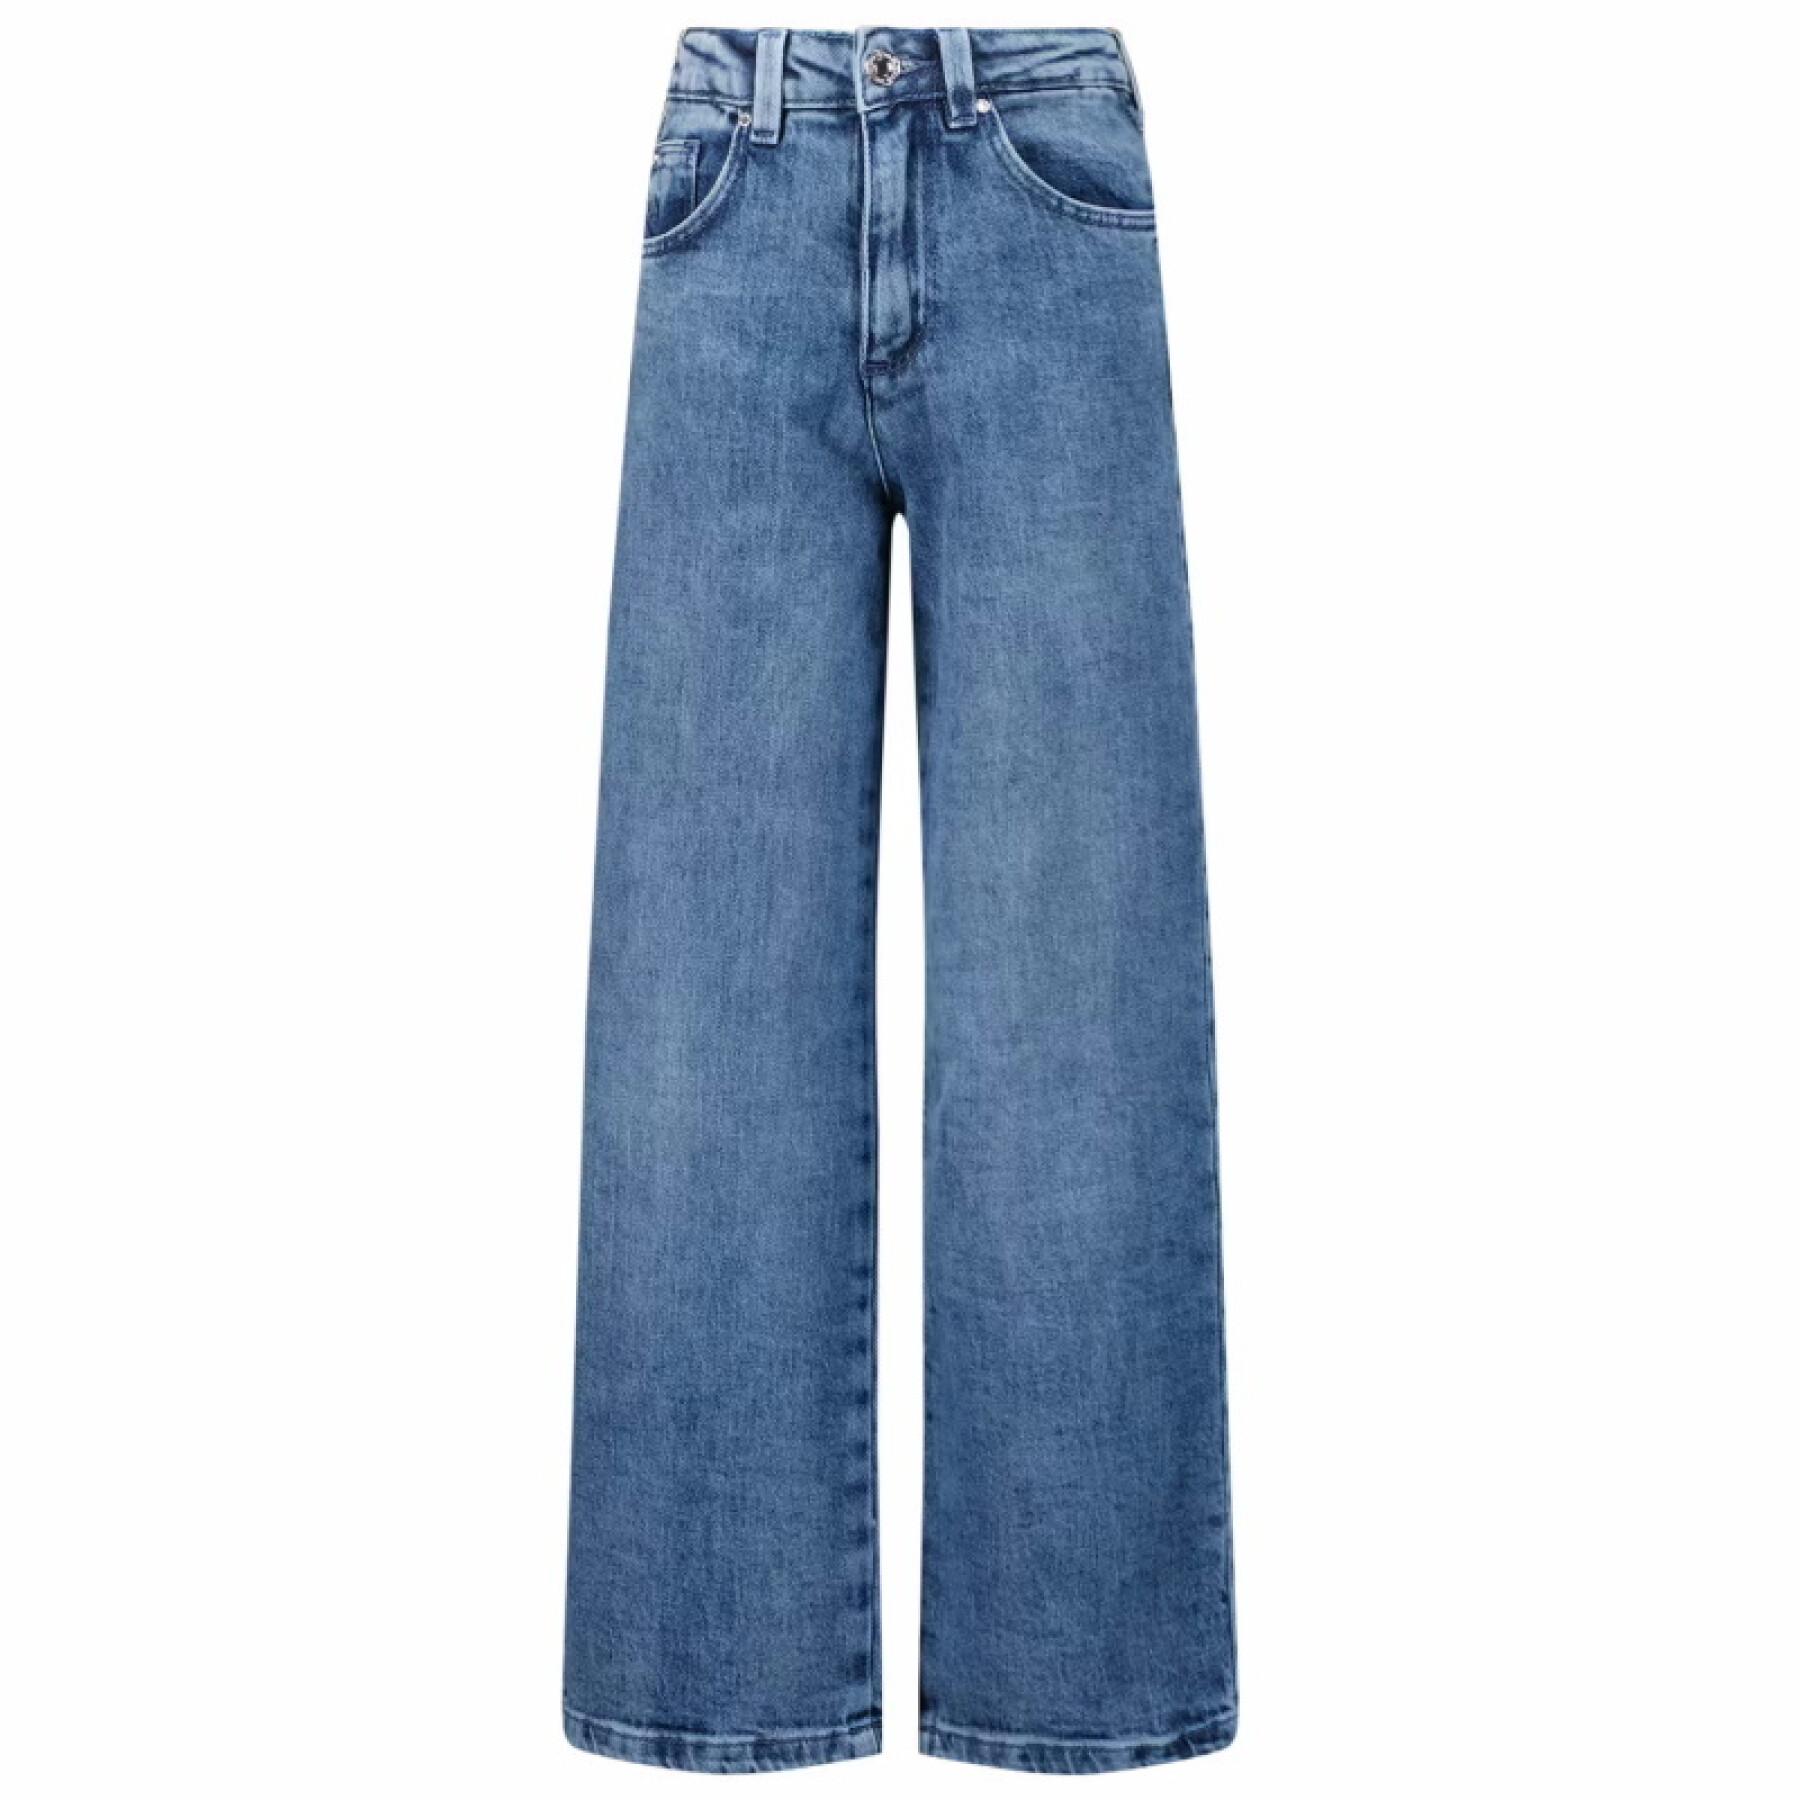 Jeans med passform för flickor Guess 90S